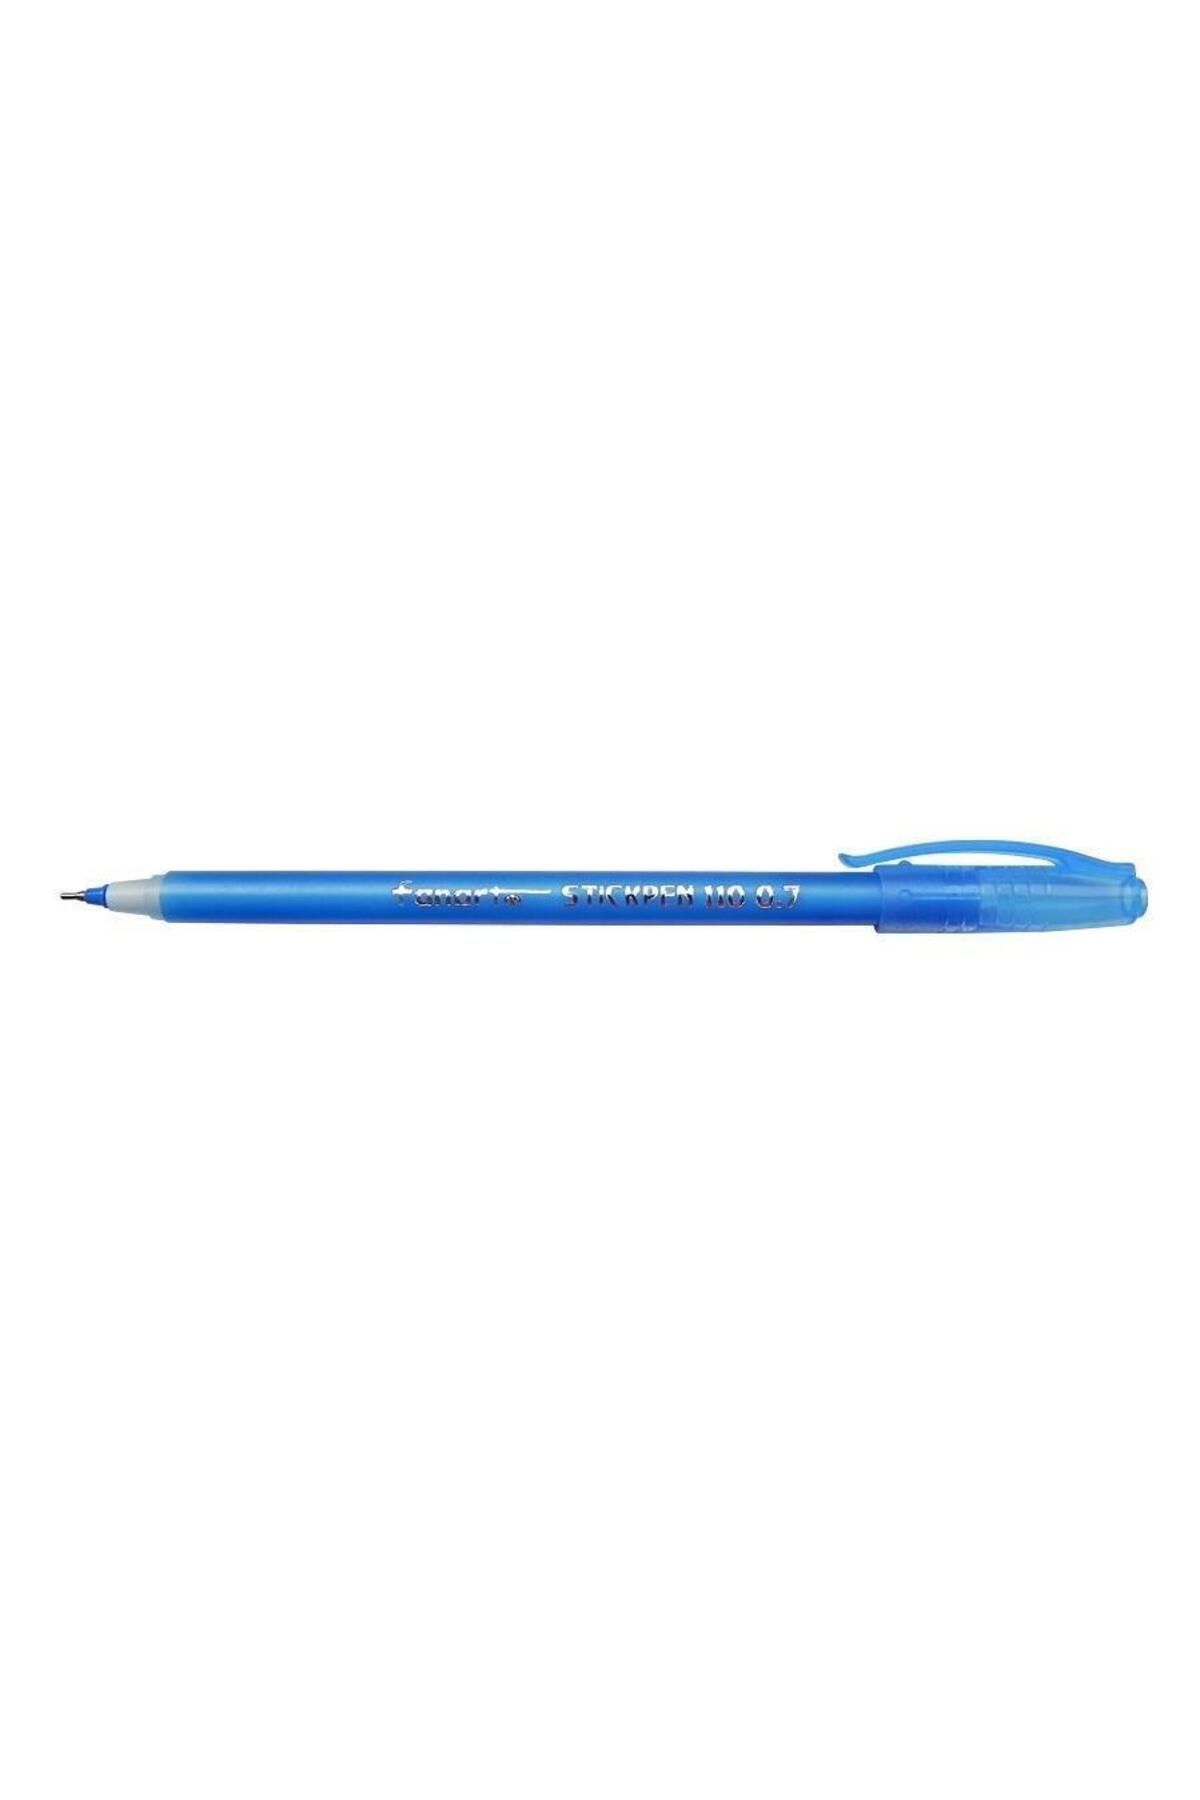 Fanart 110 Stick Pen Tükenmez Kalem Siyah